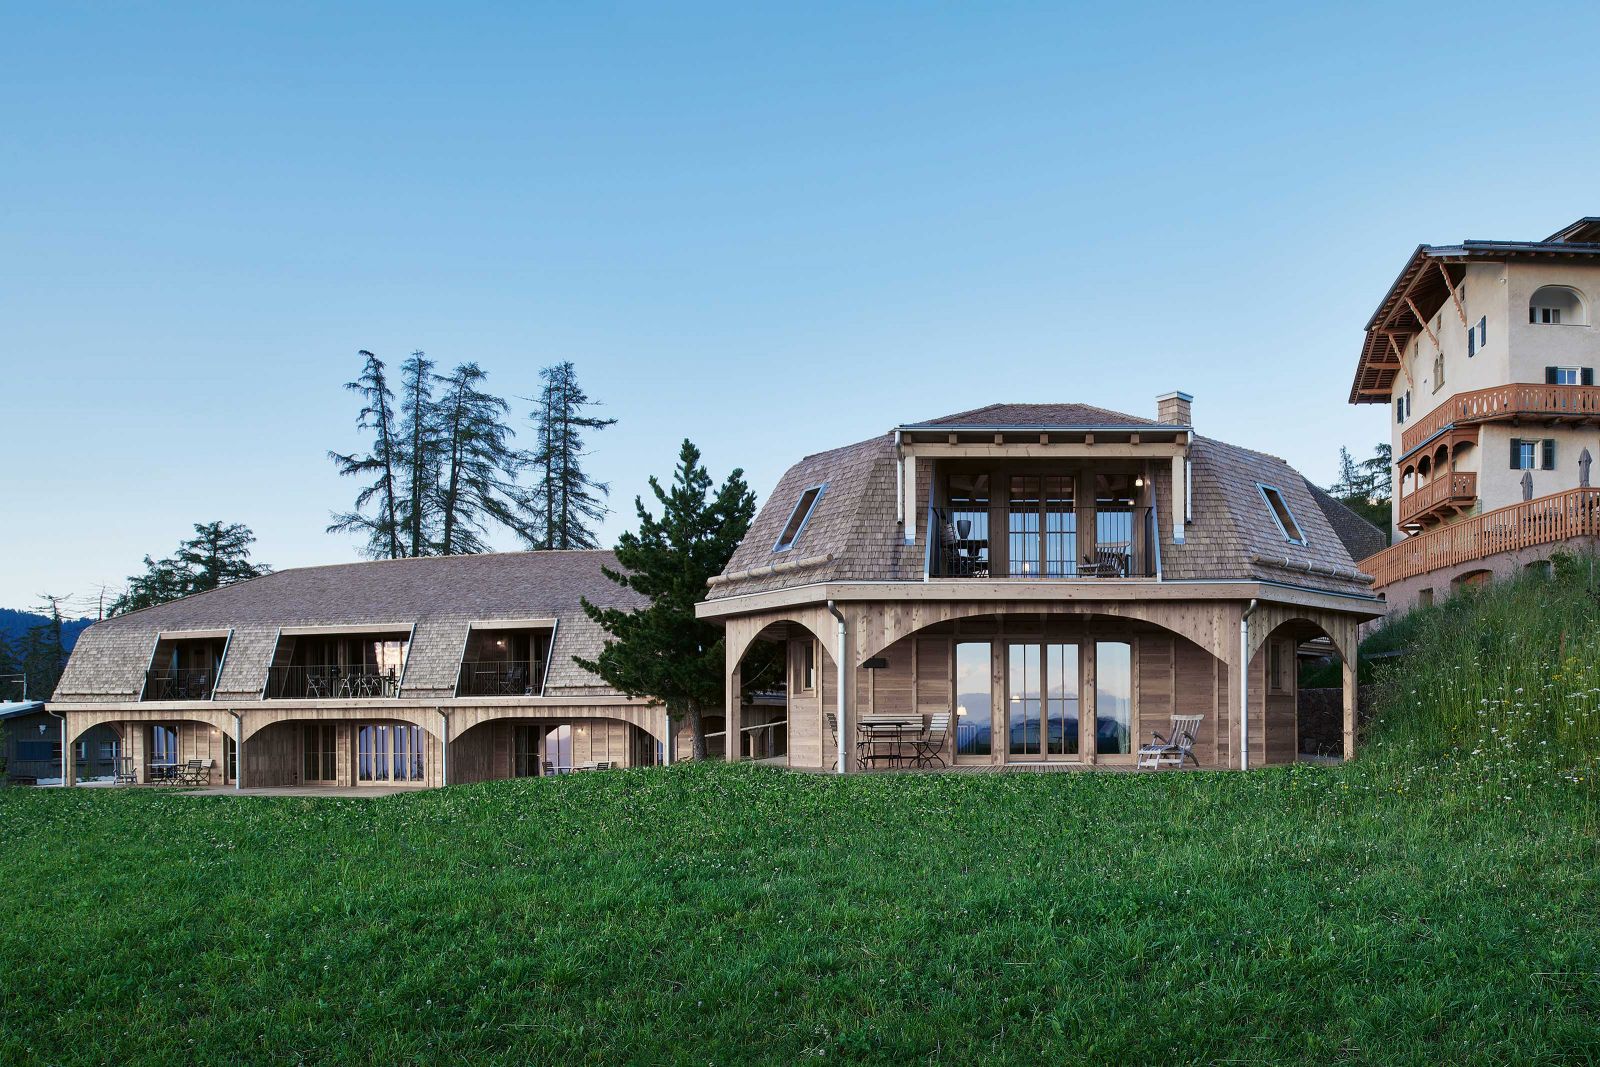 Aus Wald gemacht: Michele De Lucchi liess die Häuser in Ständerbauweise errichten. Von der Aussenterrasse bis zur Dachschindel sind die gesamten Gebäude aus Holz gefertigt. Foto: Max Rommel.